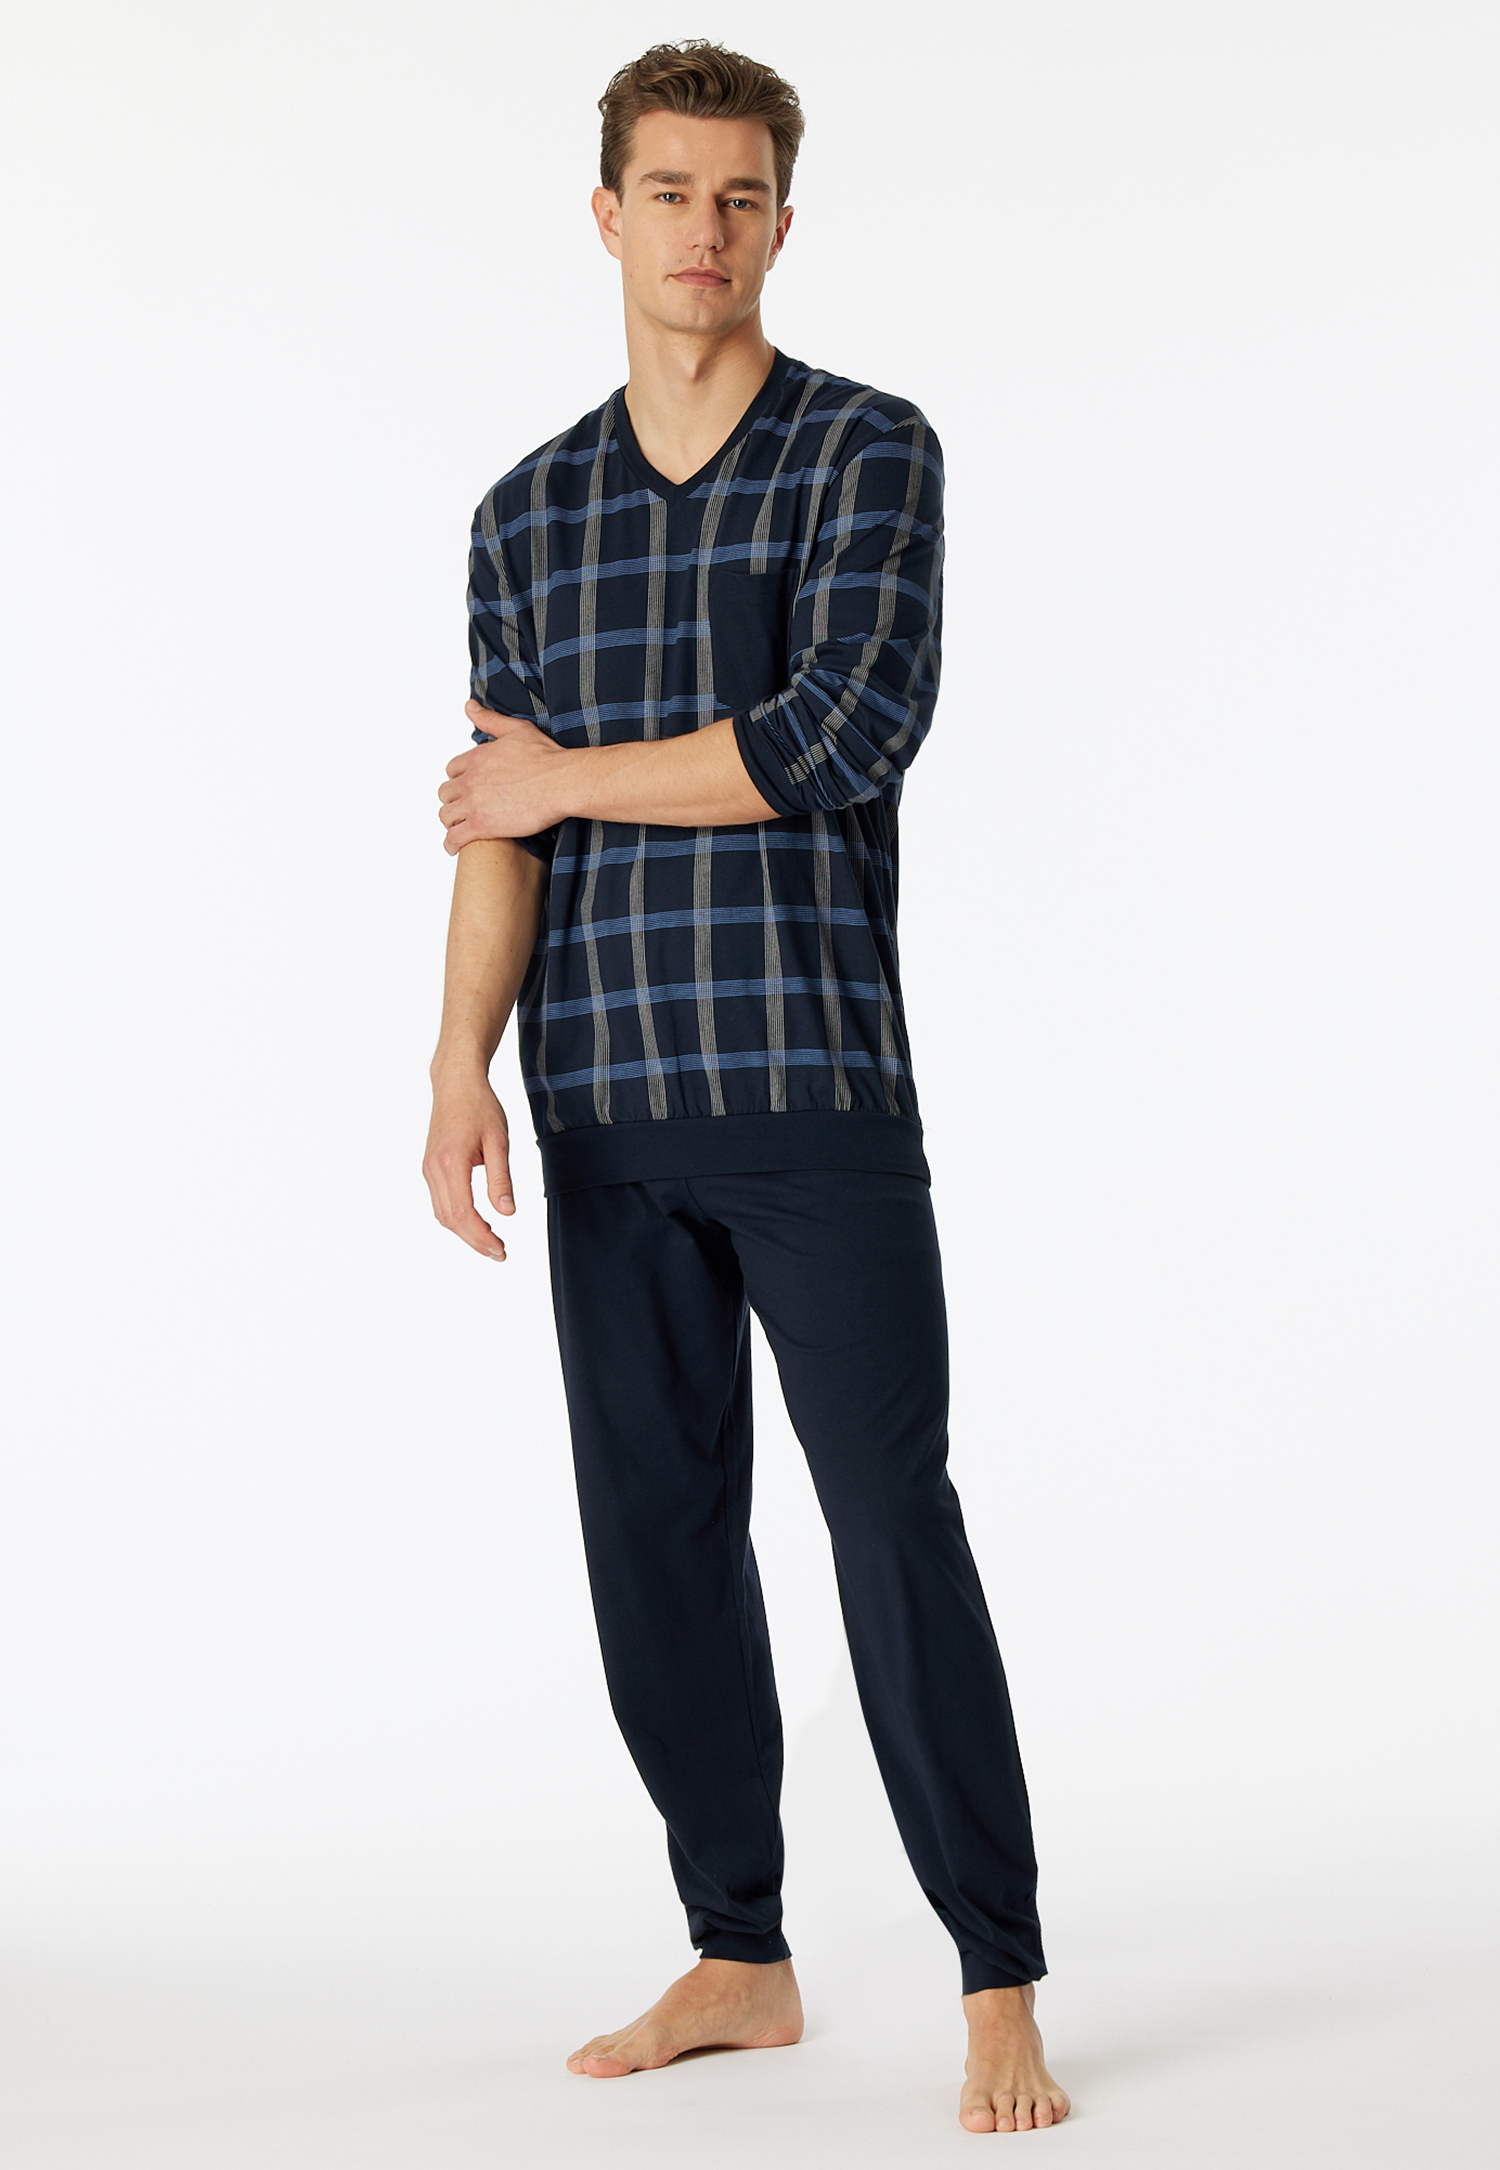 Schlafanzug lang Organic Cotton V-Ausschnitt Bündchen Brusttasche nachtblau kariert - Comfort Nightwear 54 von Schiesser